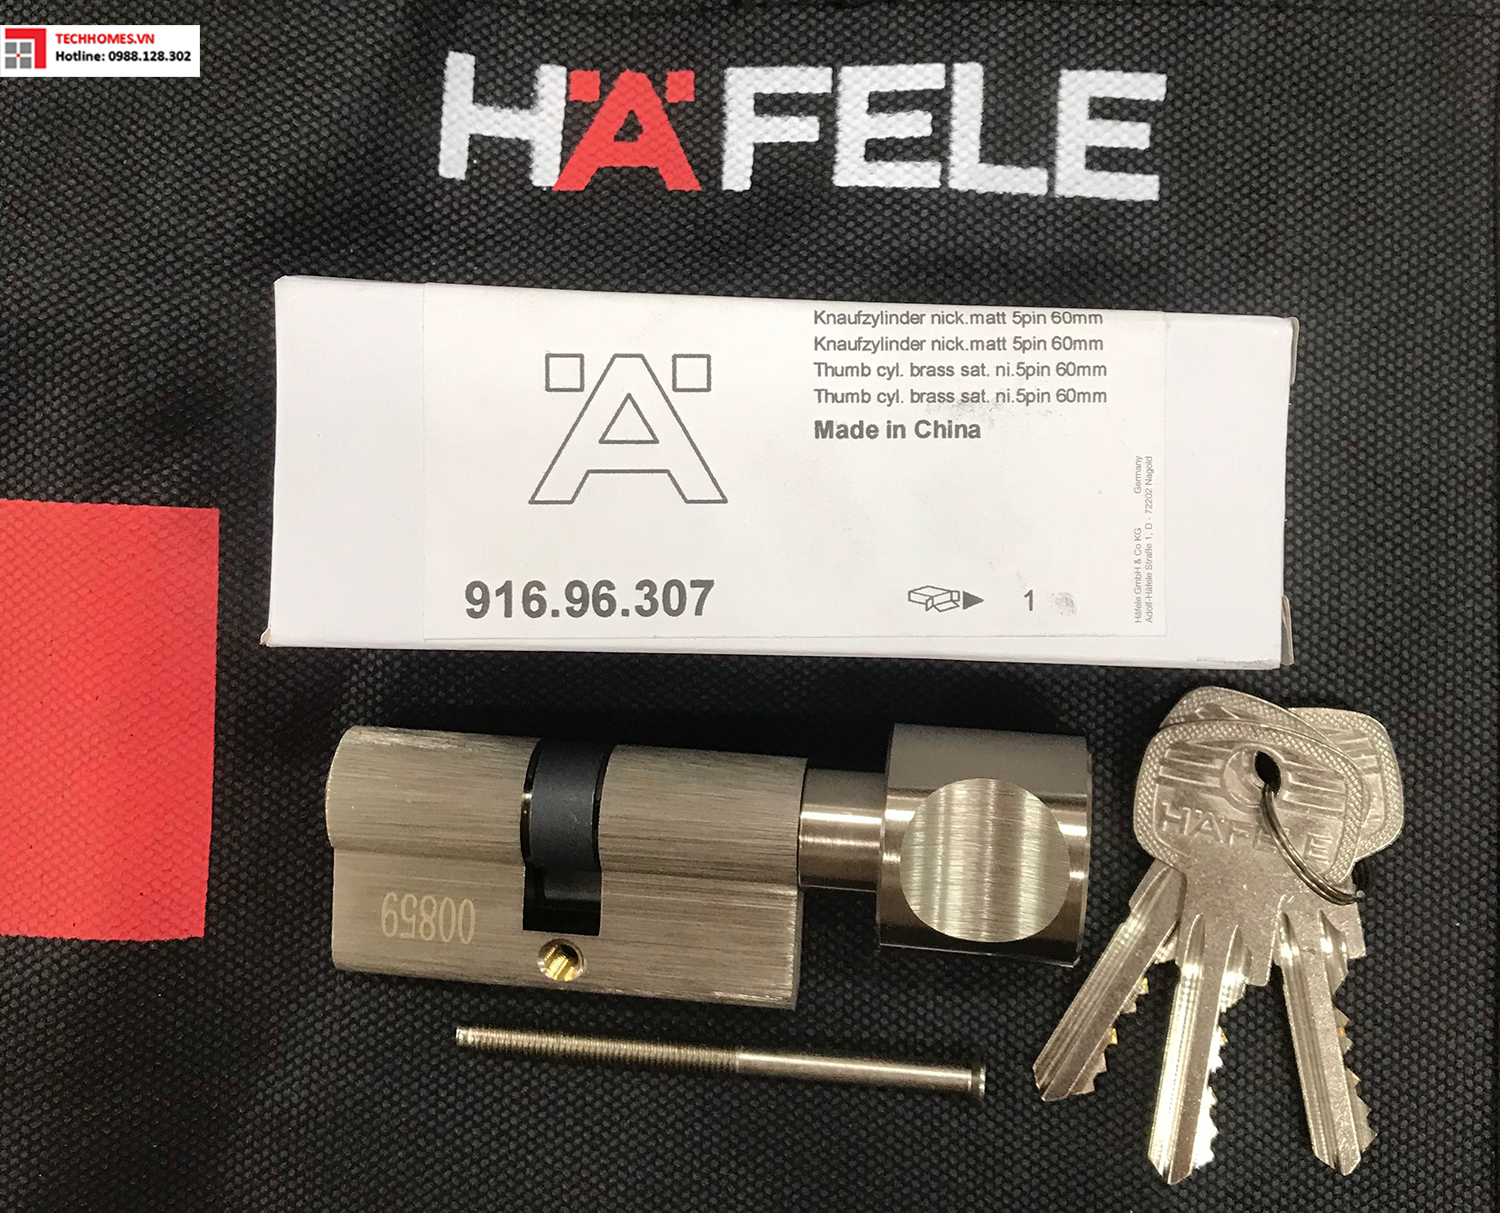 Ruột khóa Hafele một đầu chìa 916.96.307